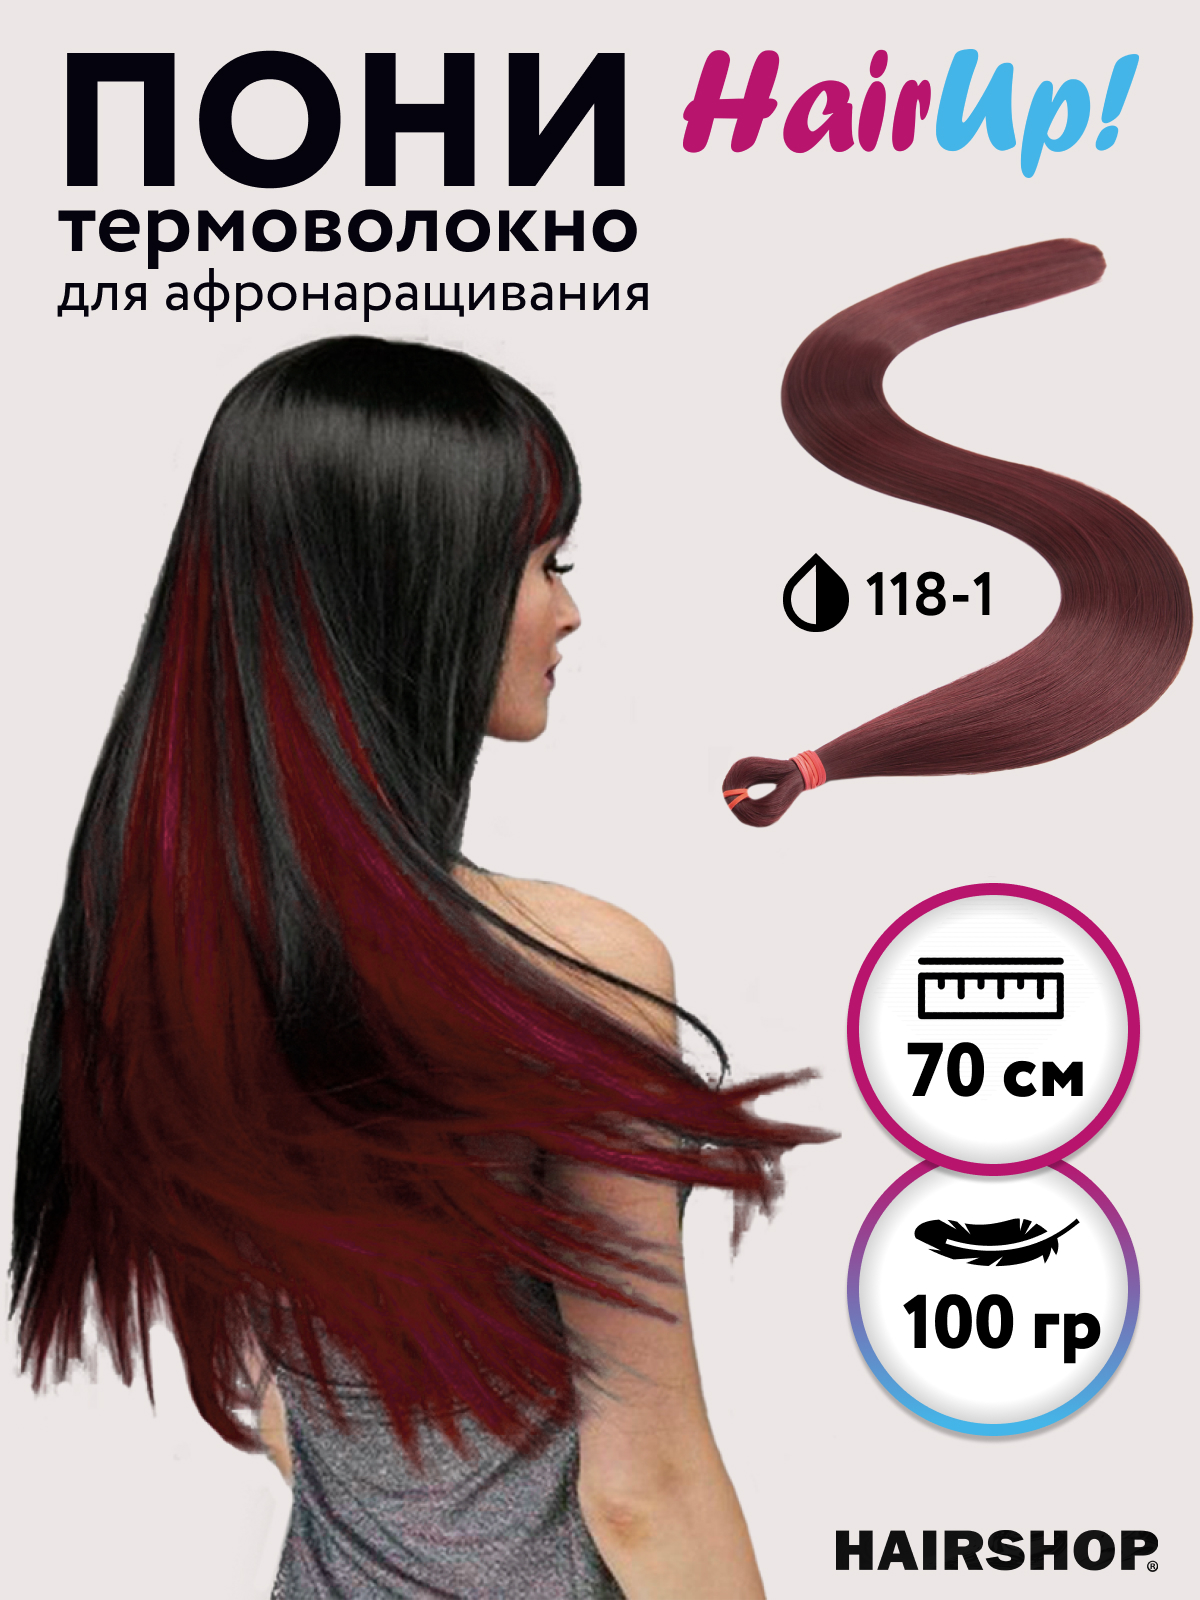 Канекалон HAIRSHOP Пони HairUp для точечного афронаращивания ПРЯМЫЕ 118-1 Бордо 1,4м 100г tsubaki спрей гладкие и прямые волосы